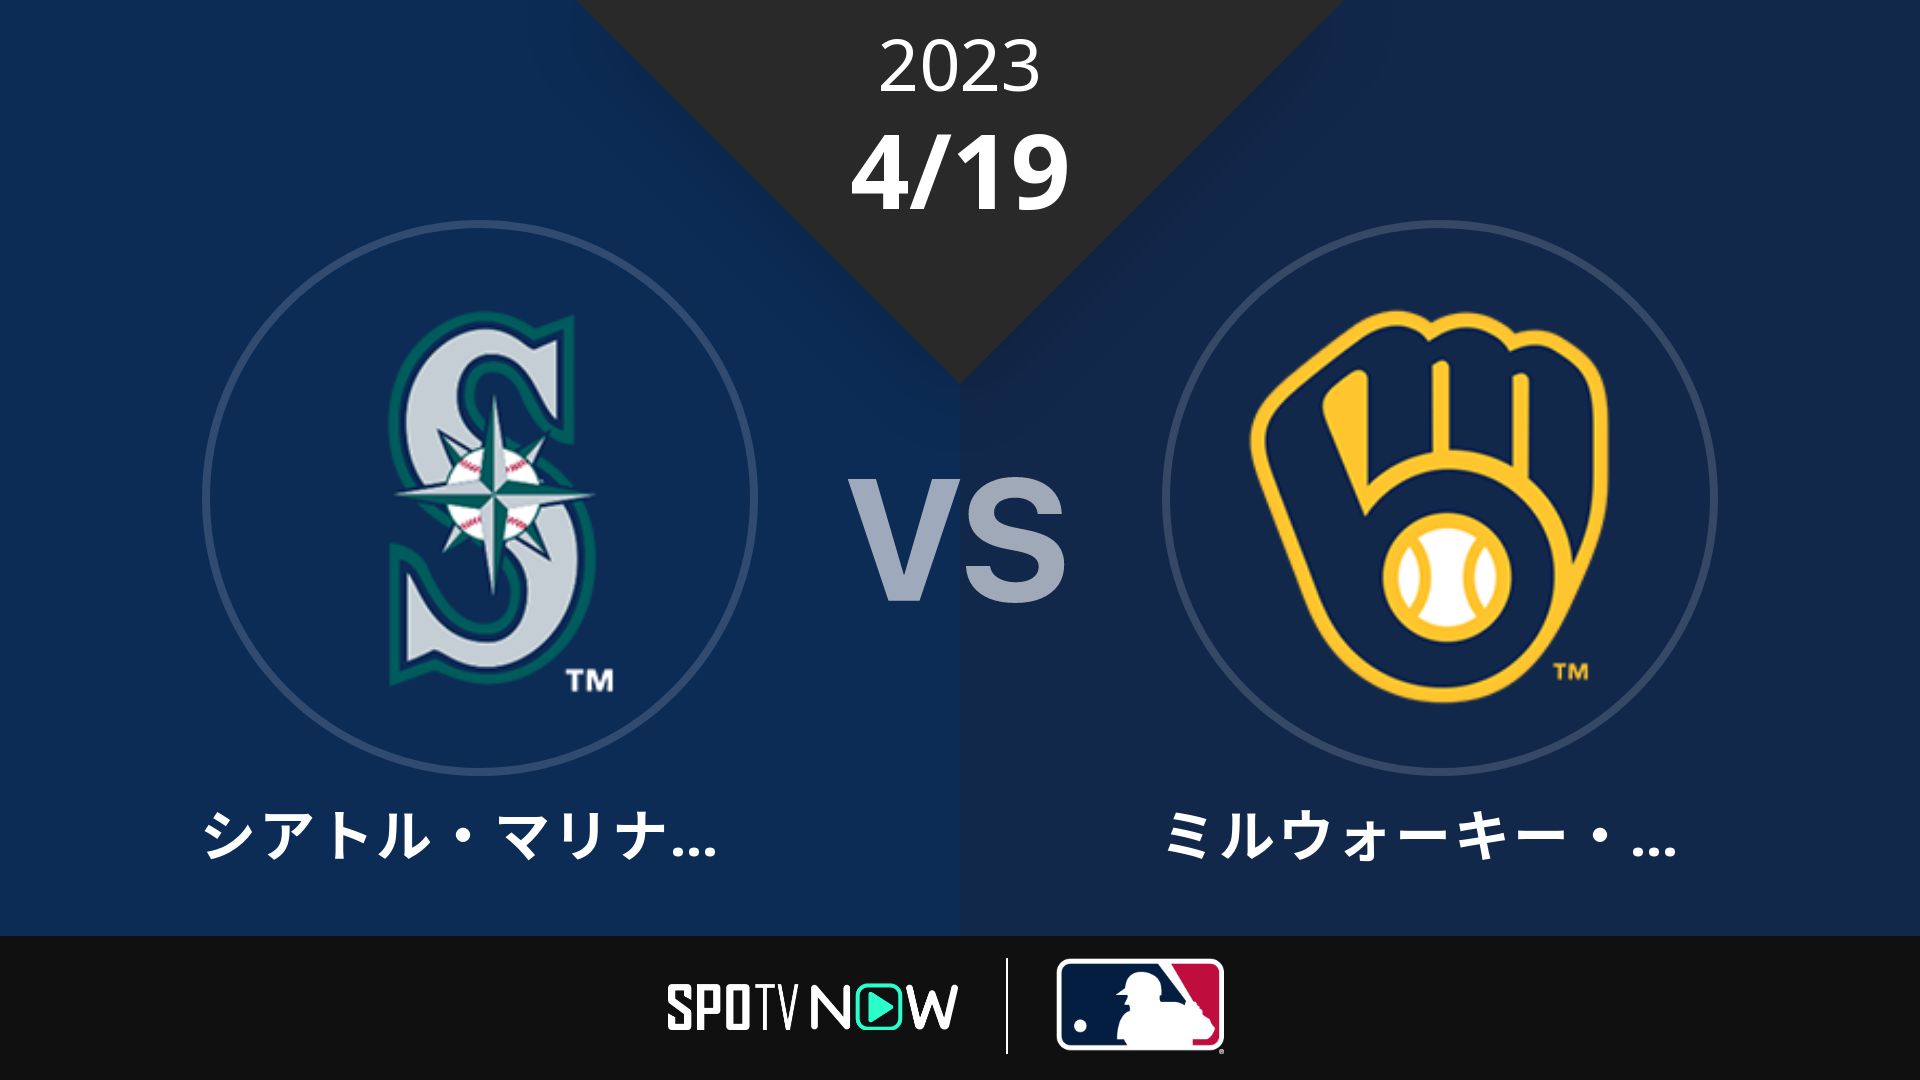 2023/4/19 マリナーズ vs ブリュワーズ [MLB]